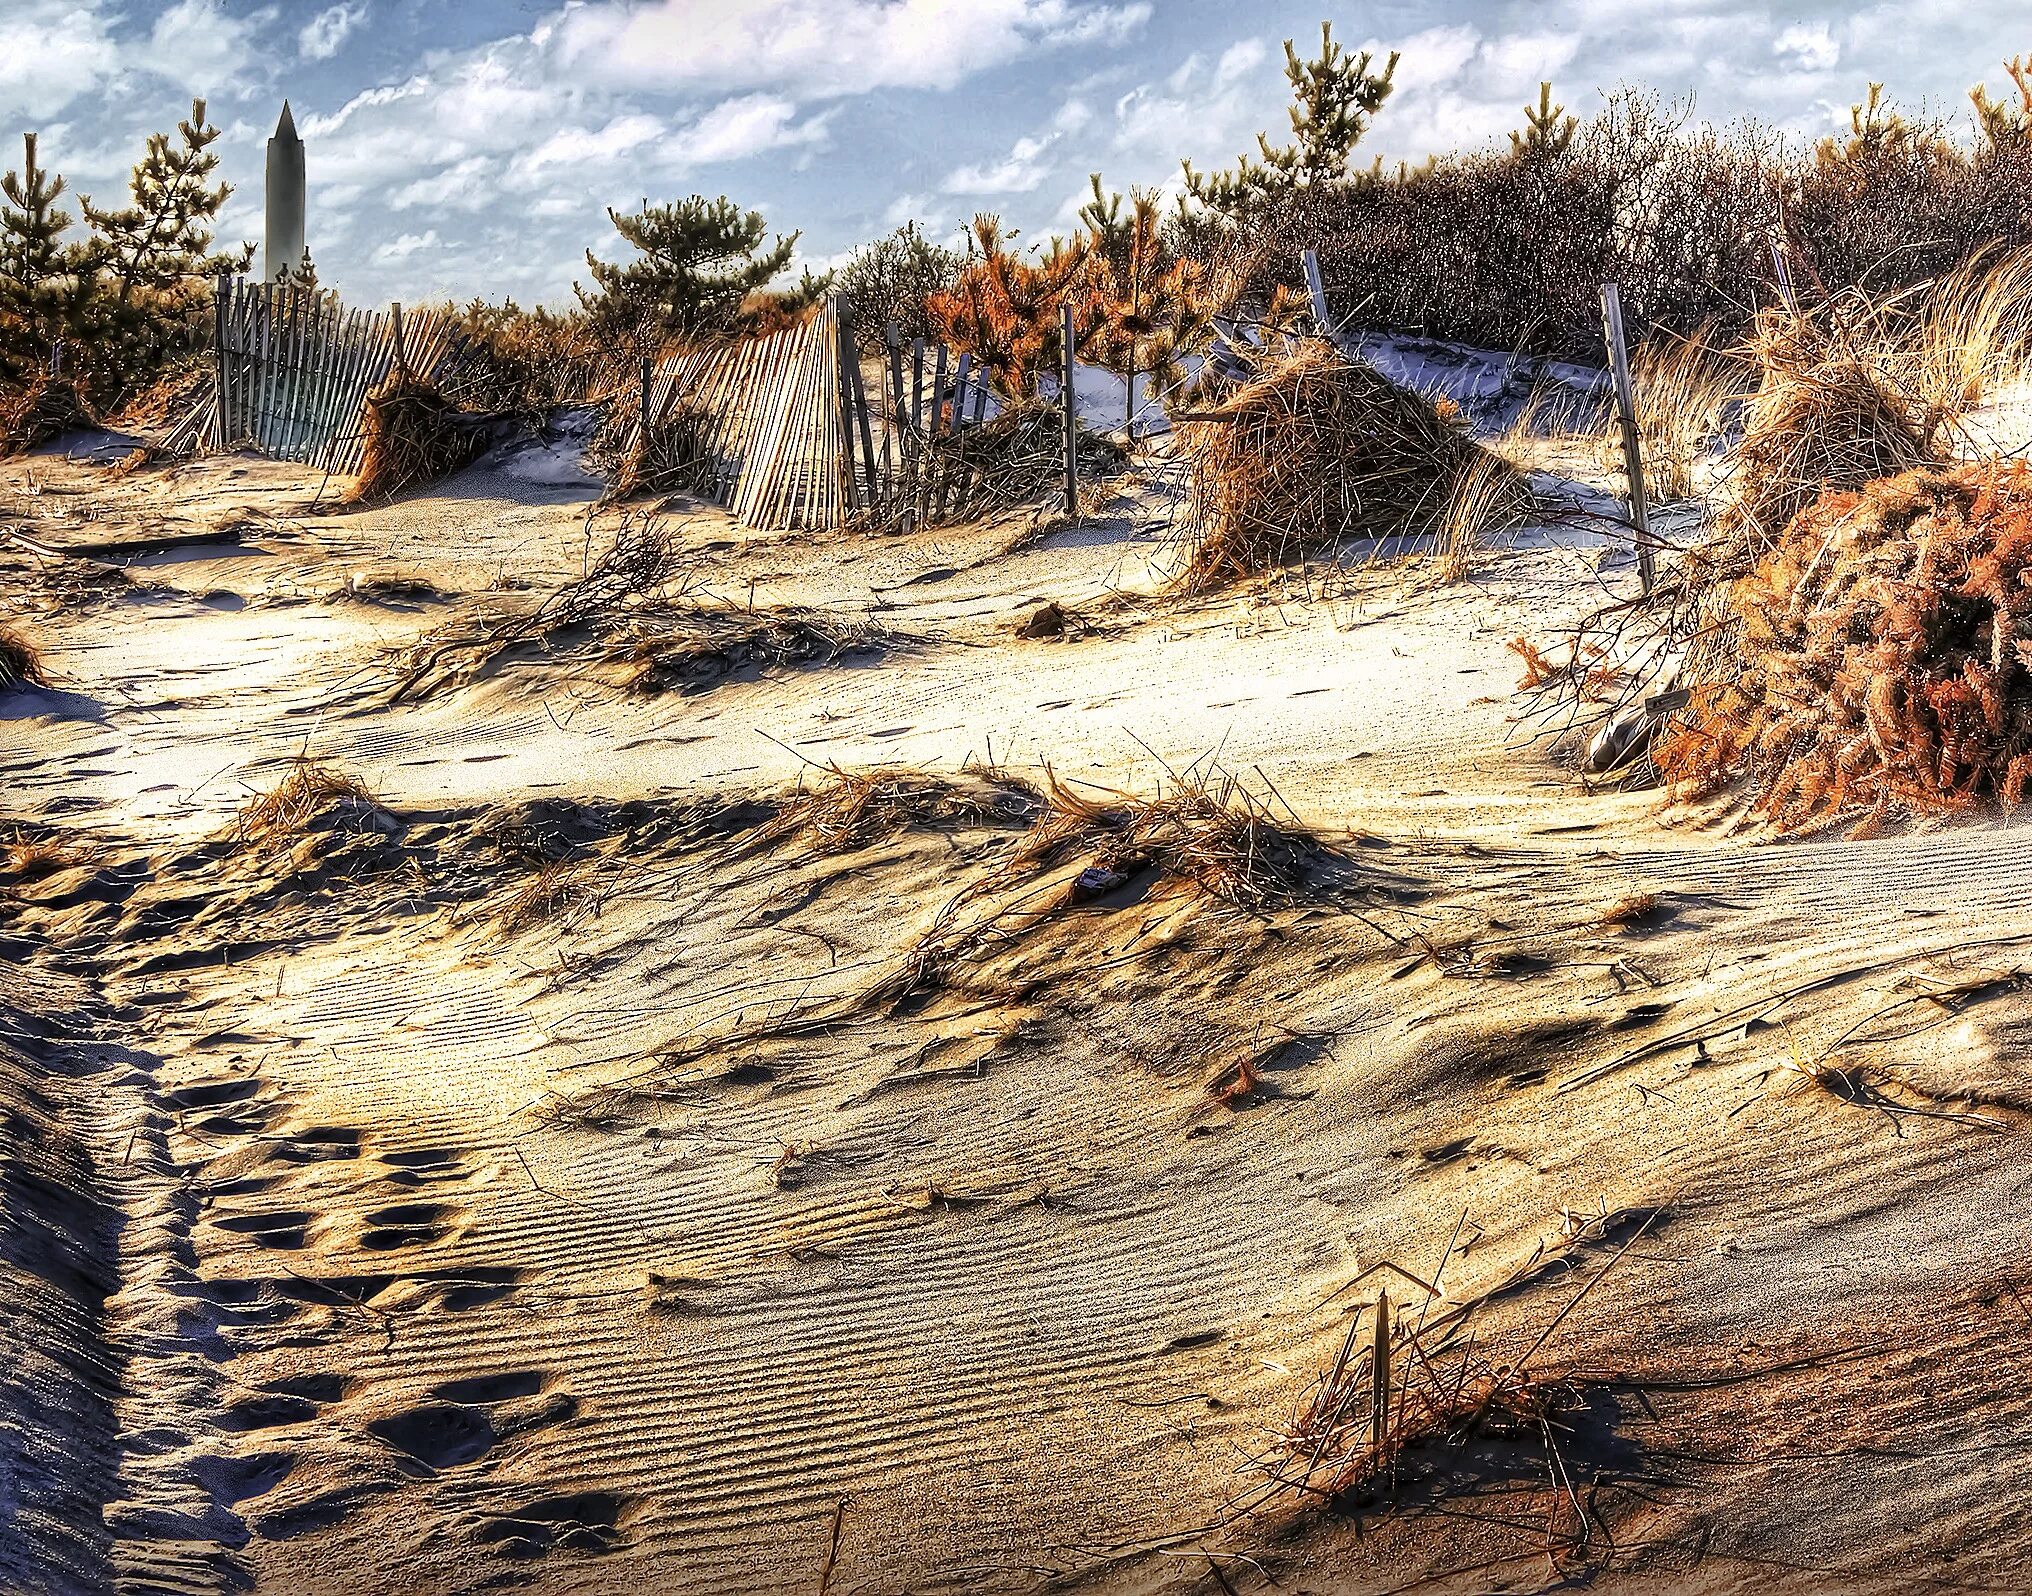 Местность с песком. Дюны на Песчаном пляже. Прибрежная линия песок. Прибрежные холмы.